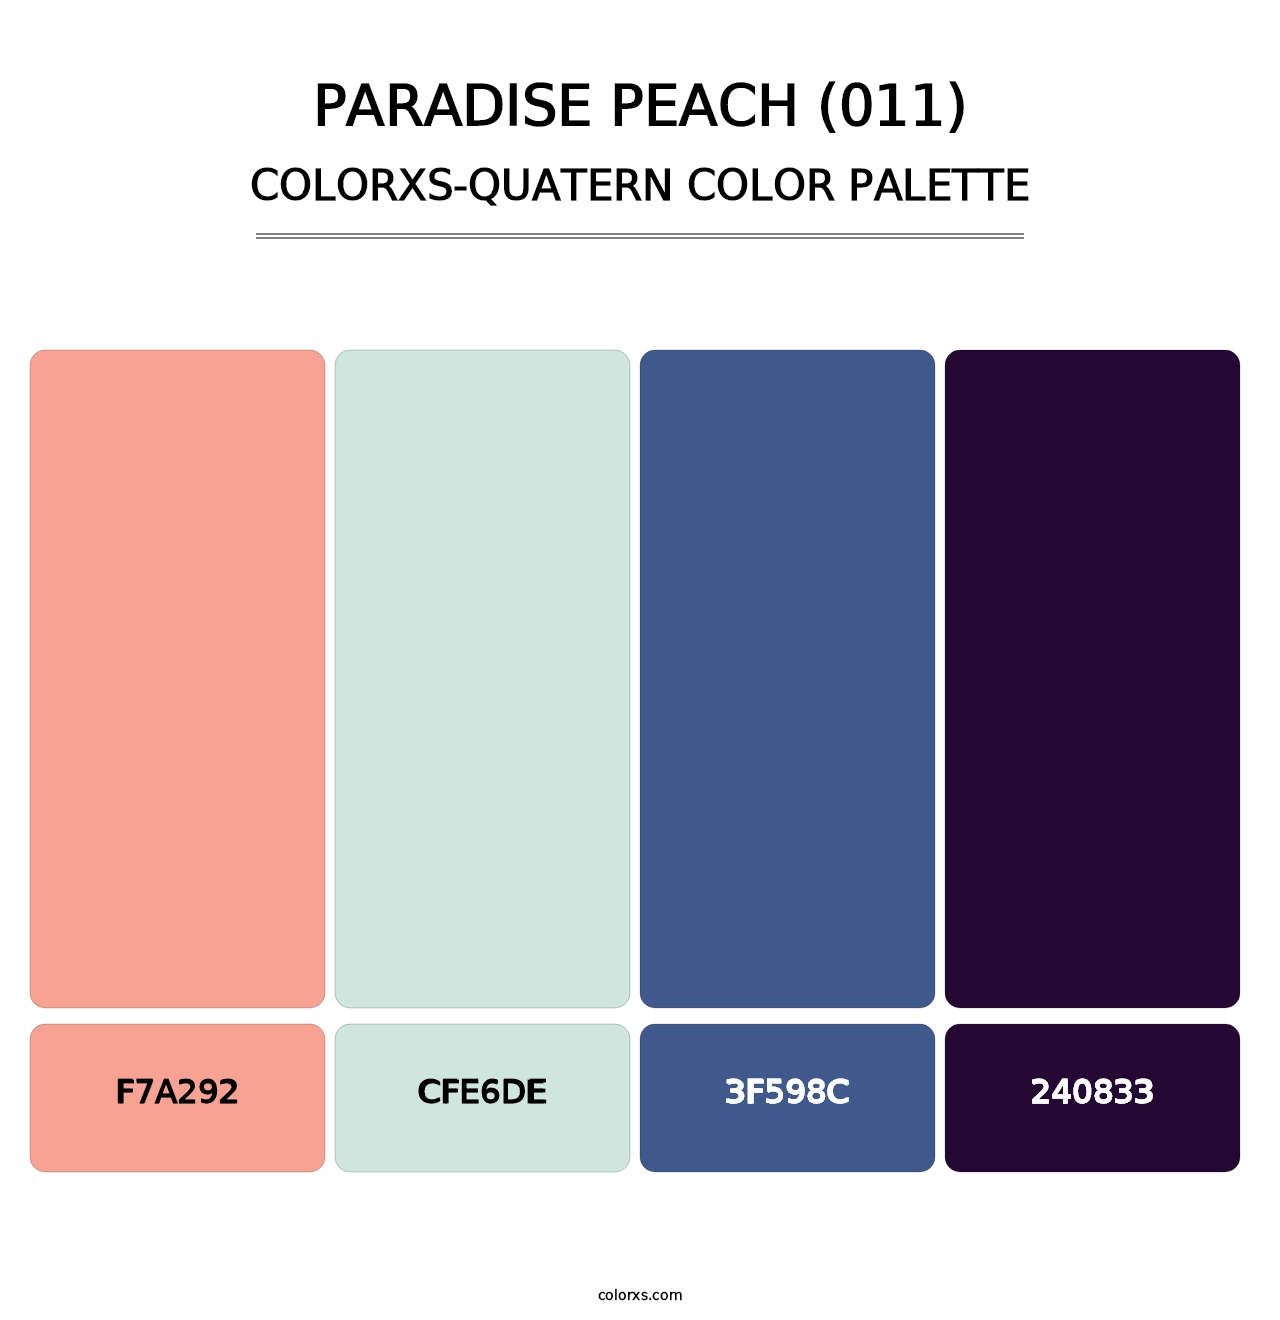 Paradise Peach (011) - Colorxs Quatern Palette